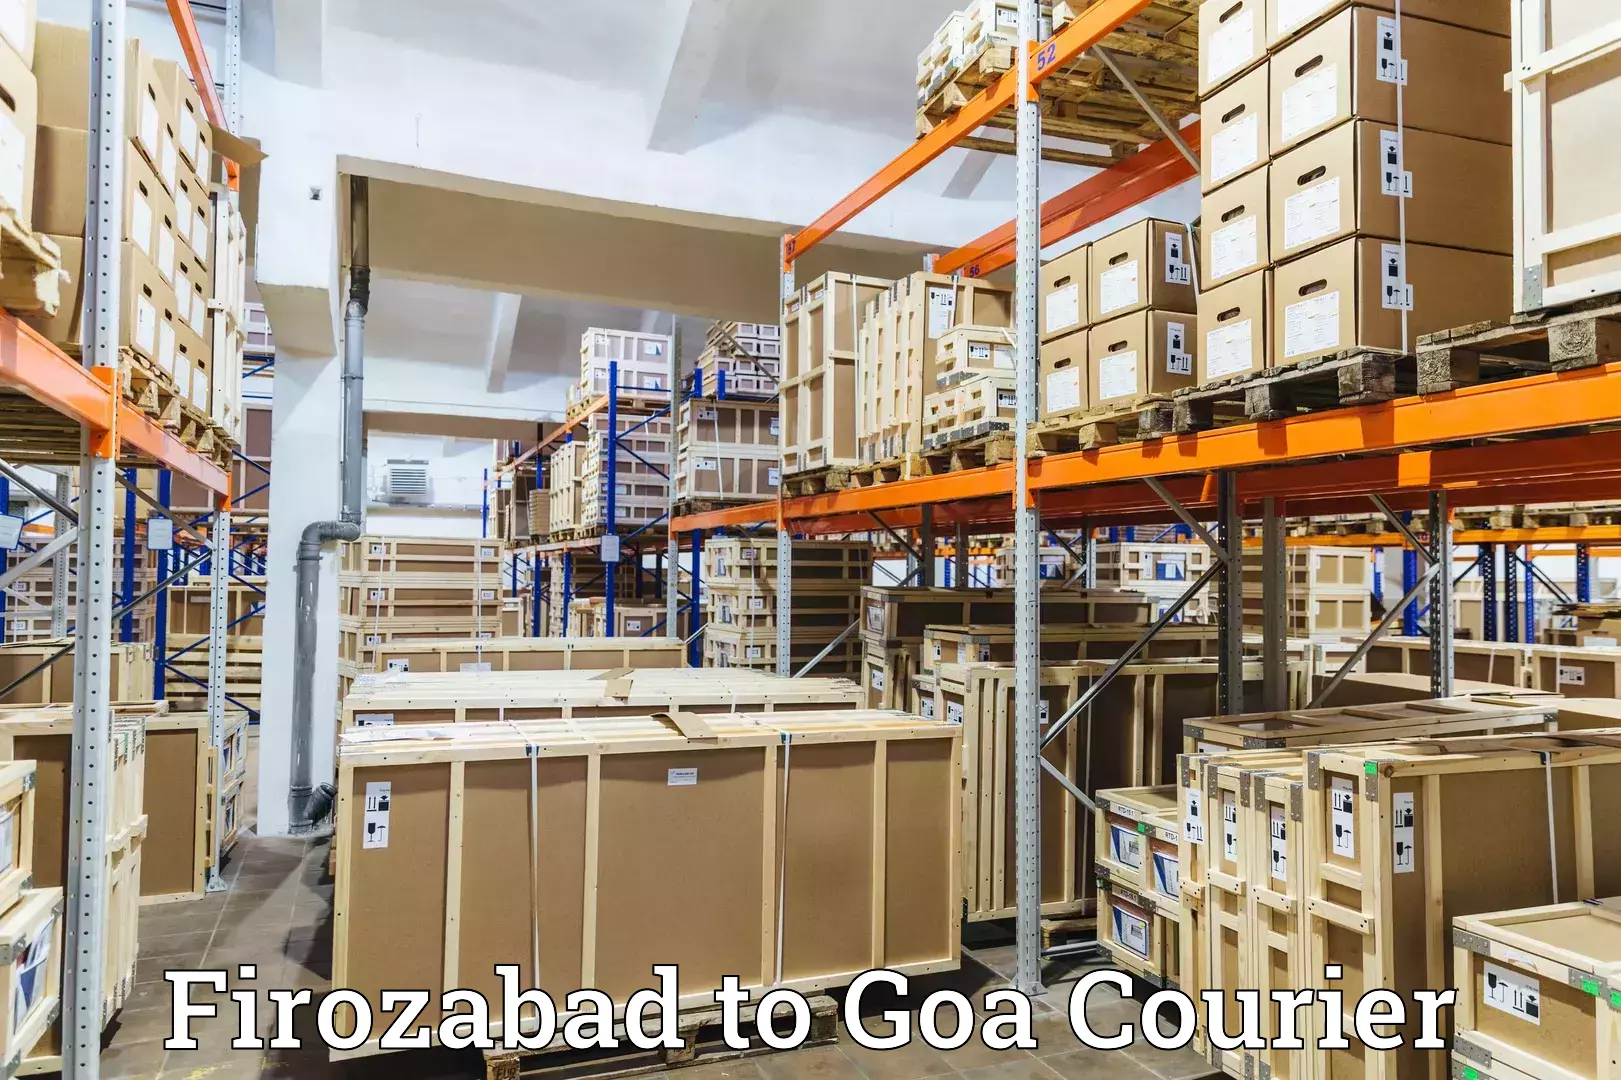 Tech-enabled shipping Firozabad to IIT Goa